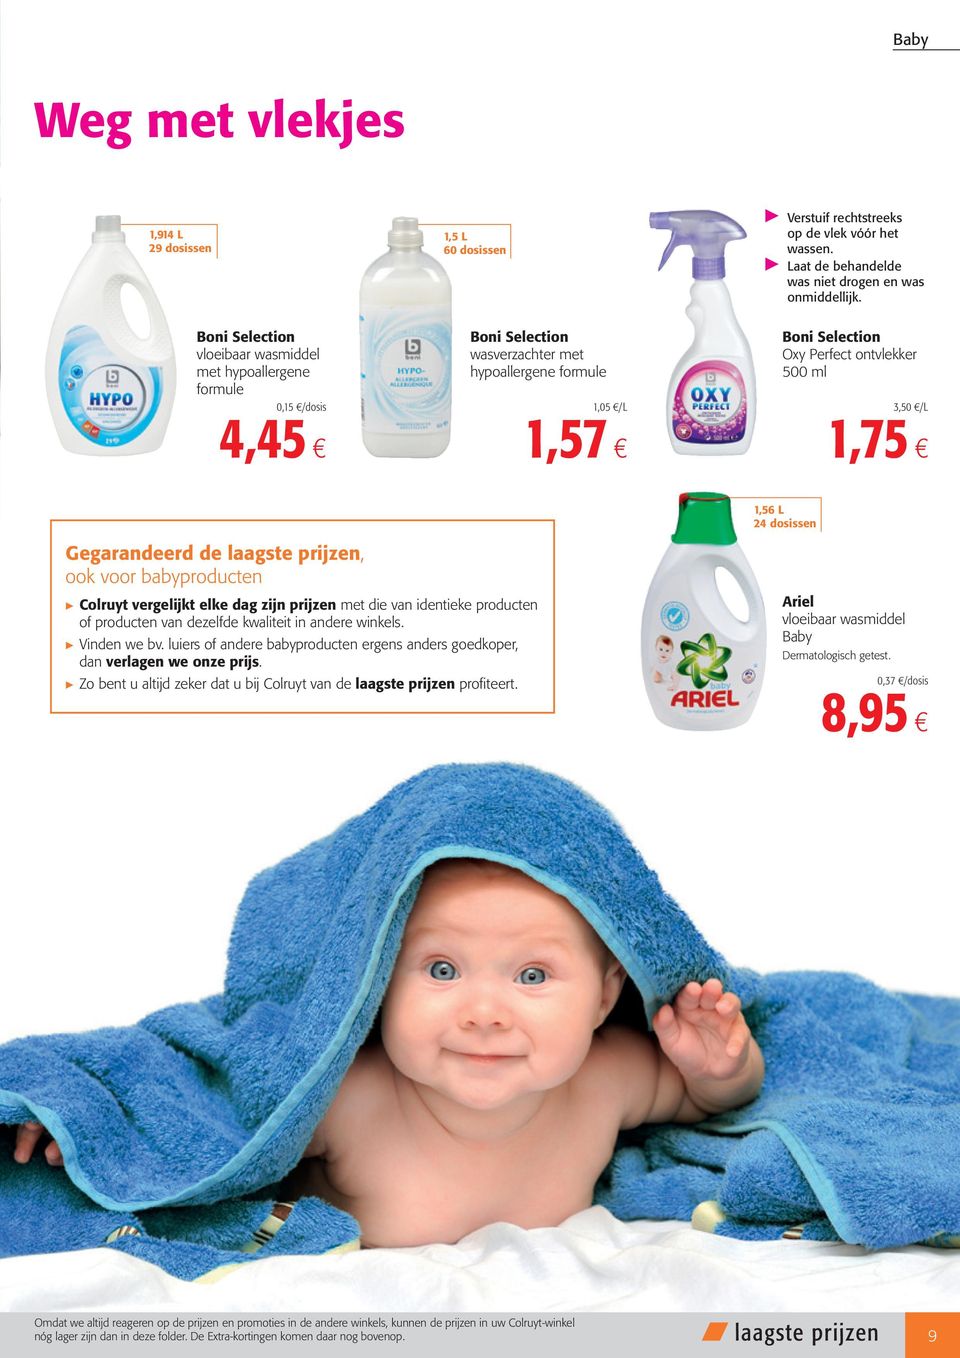 Oxy Perfect ontvlekker 500 ml 3,50 /L 1,75 1,56 L 24 dosissen Gegarandeerd de laagste prijzen, ook voor babyproducten Colruyt vergelijkt elke dag zijn prijzen met die van identieke producten of